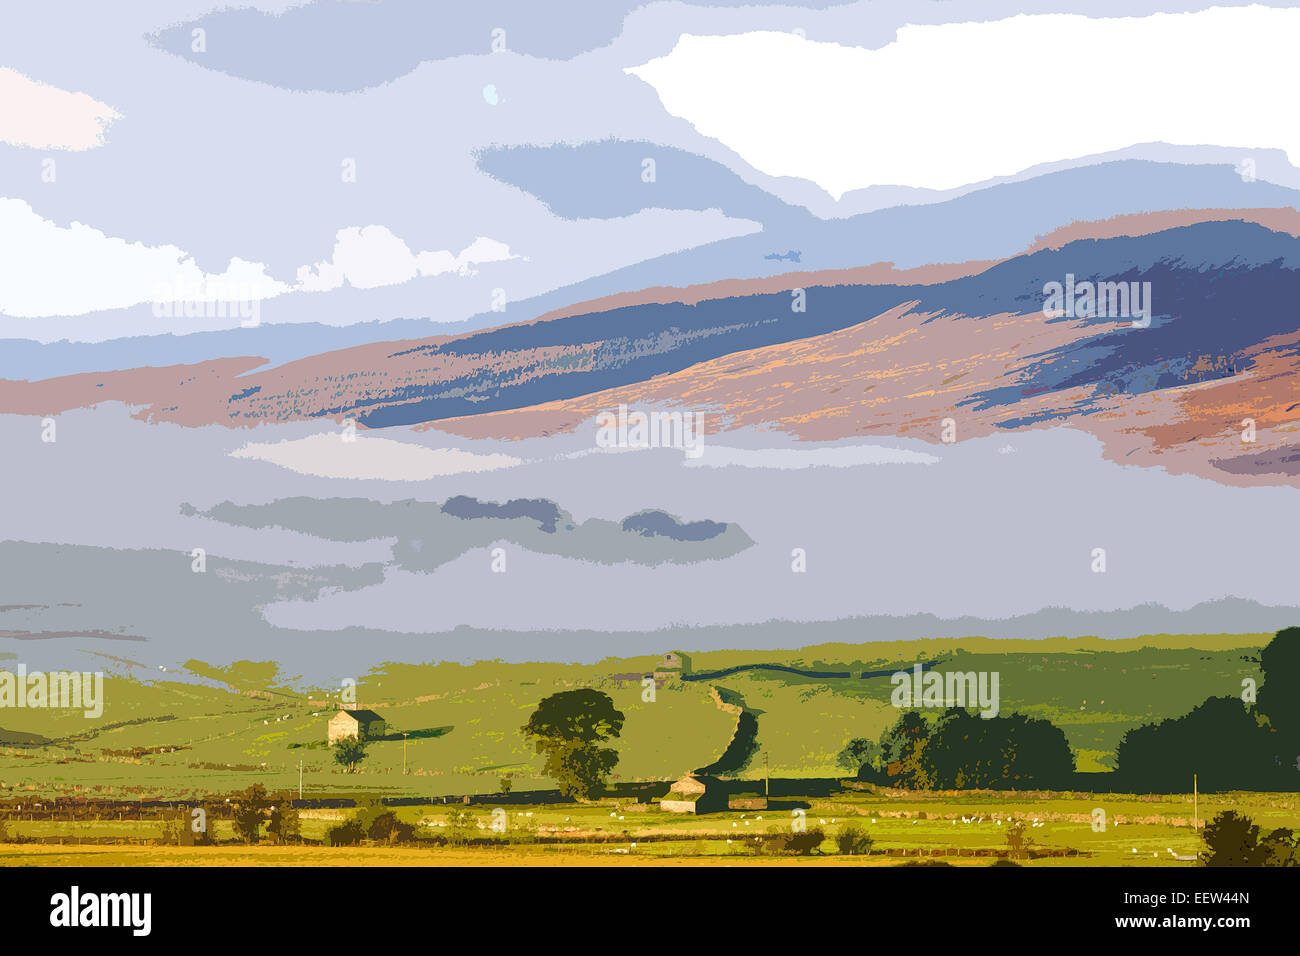 Un style poster l'interprétation de la région de Wensleydale, Yorkshire Dales National Park. North Yorkshire, England, UK Banque D'Images